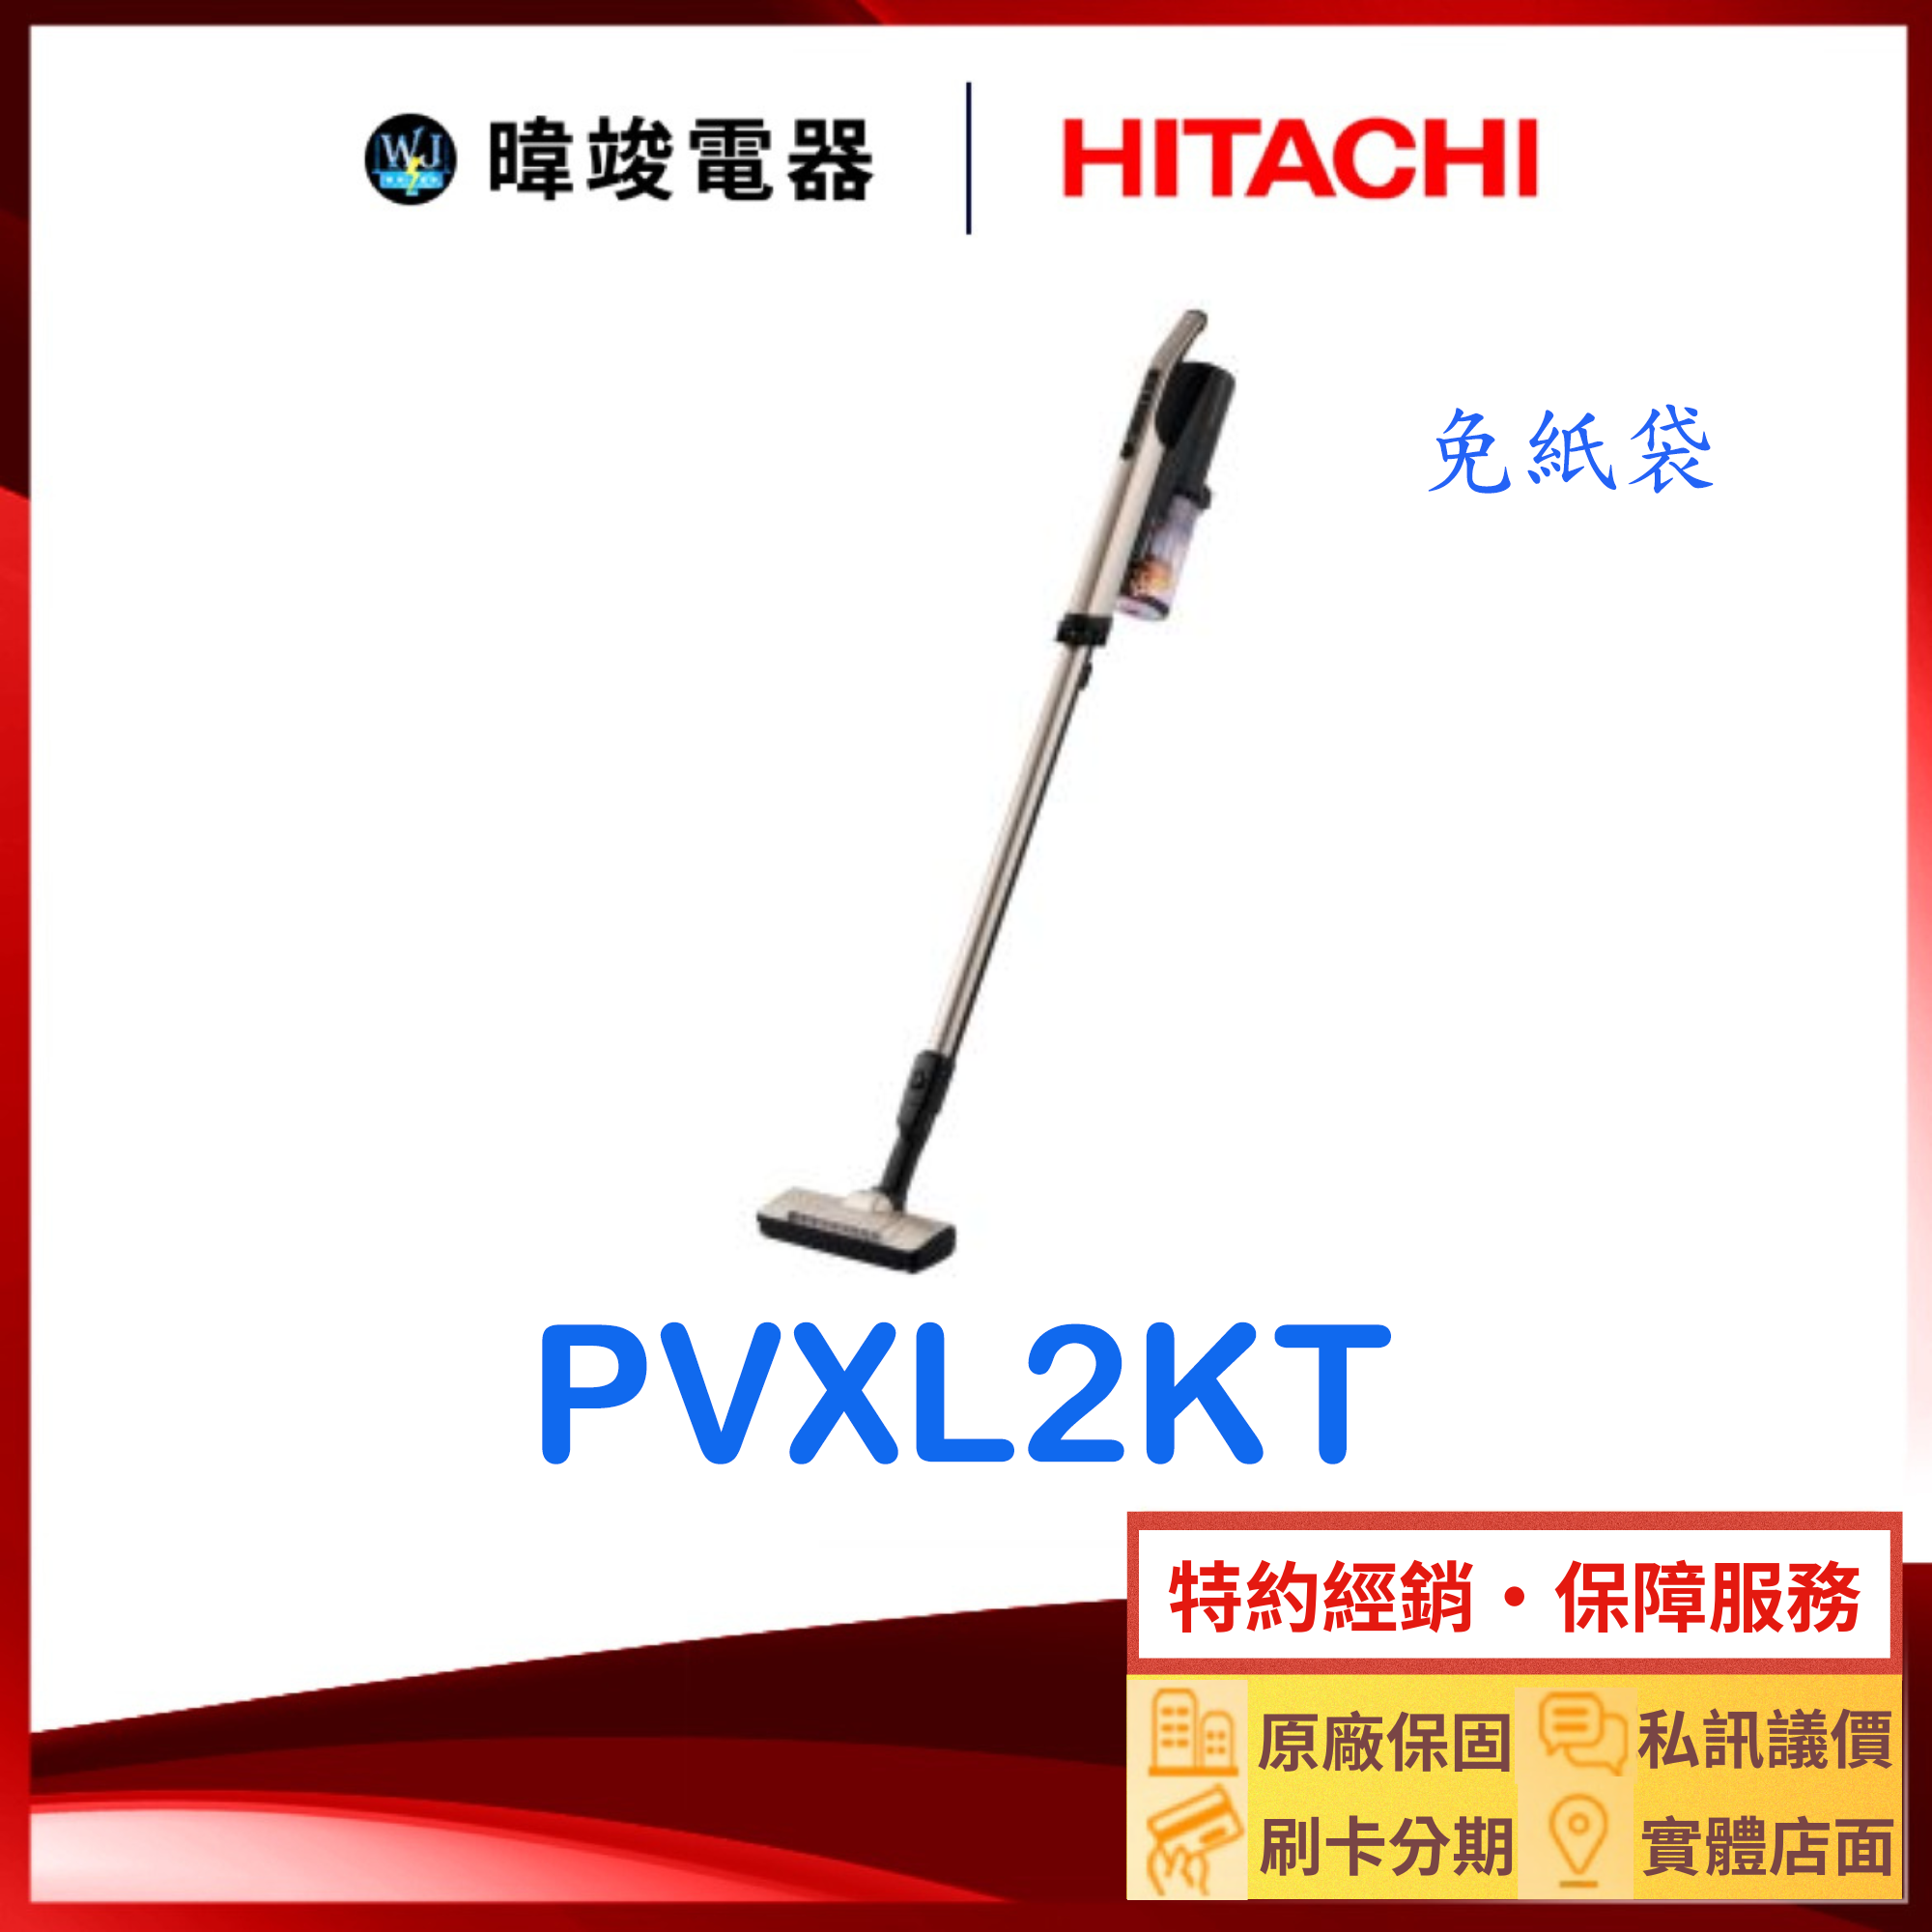 現貨🔥【暐竣電器】HITACHI 日立 PV-XL2KT 直立式 吸塵器 PVXL2KT 無線吸塵器 免紙